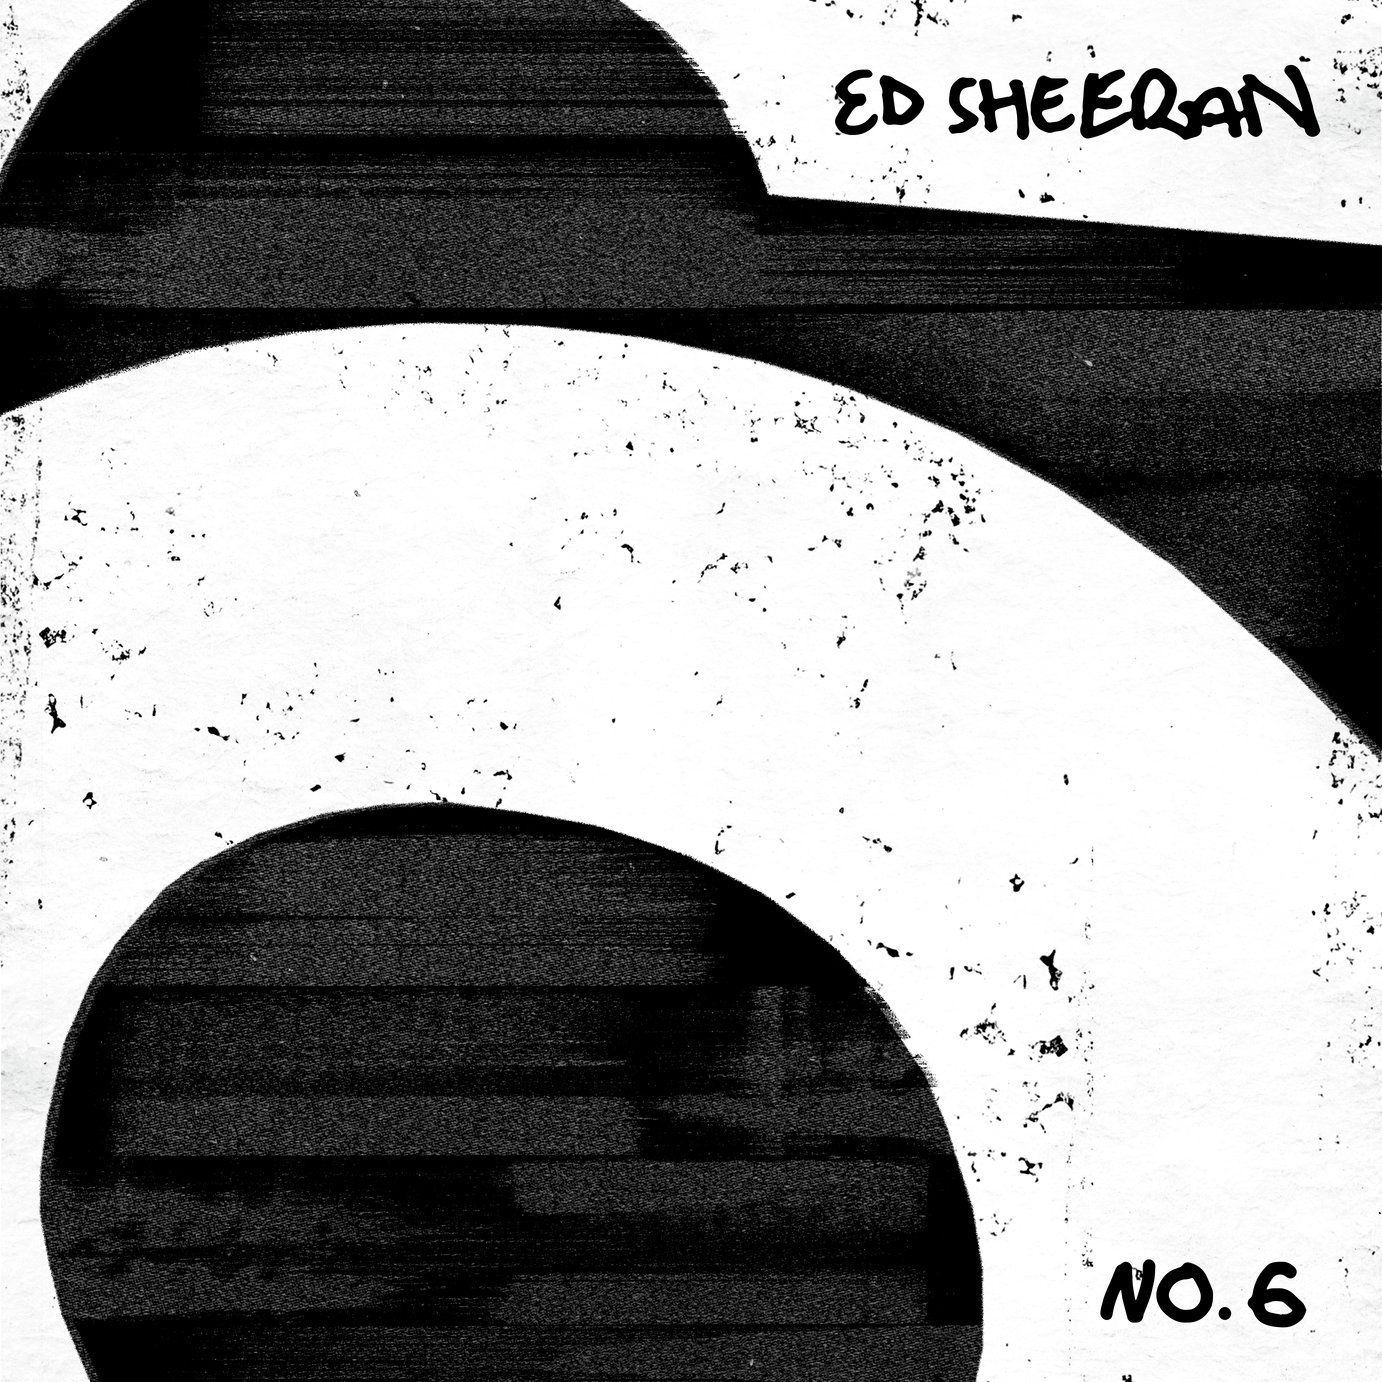 Ed Sheeran No. 6 Collaborations Project CD Review